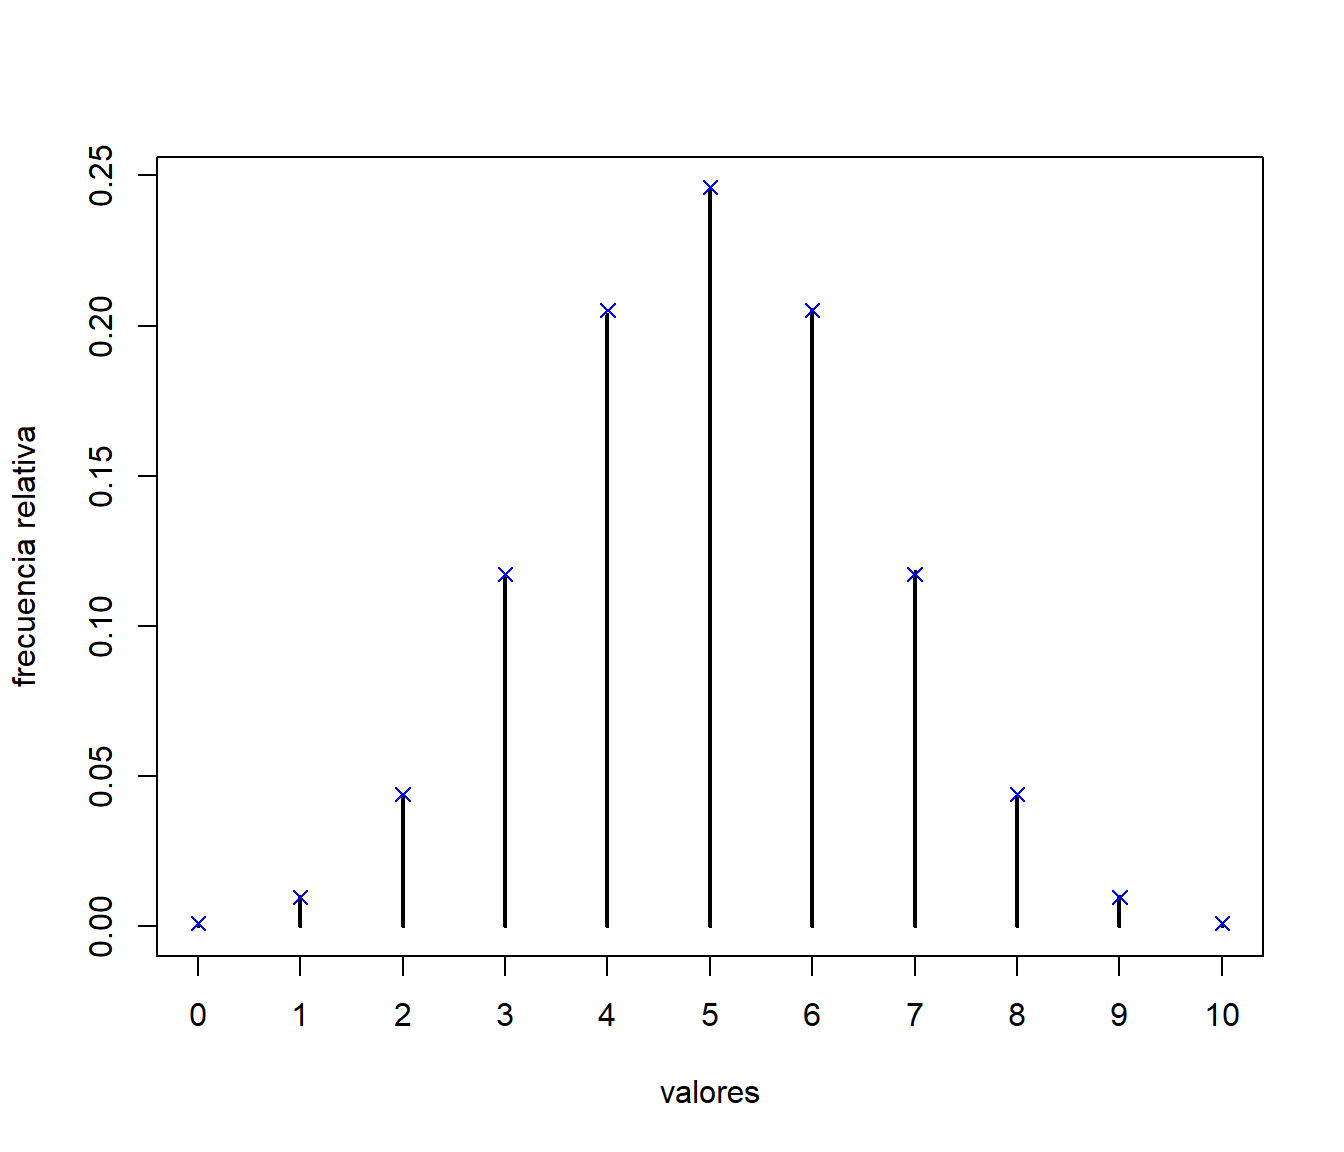 Comparación de las frecuencias relativas de los valores generados, mediante el método de alias, con las probabilidades teóricas.